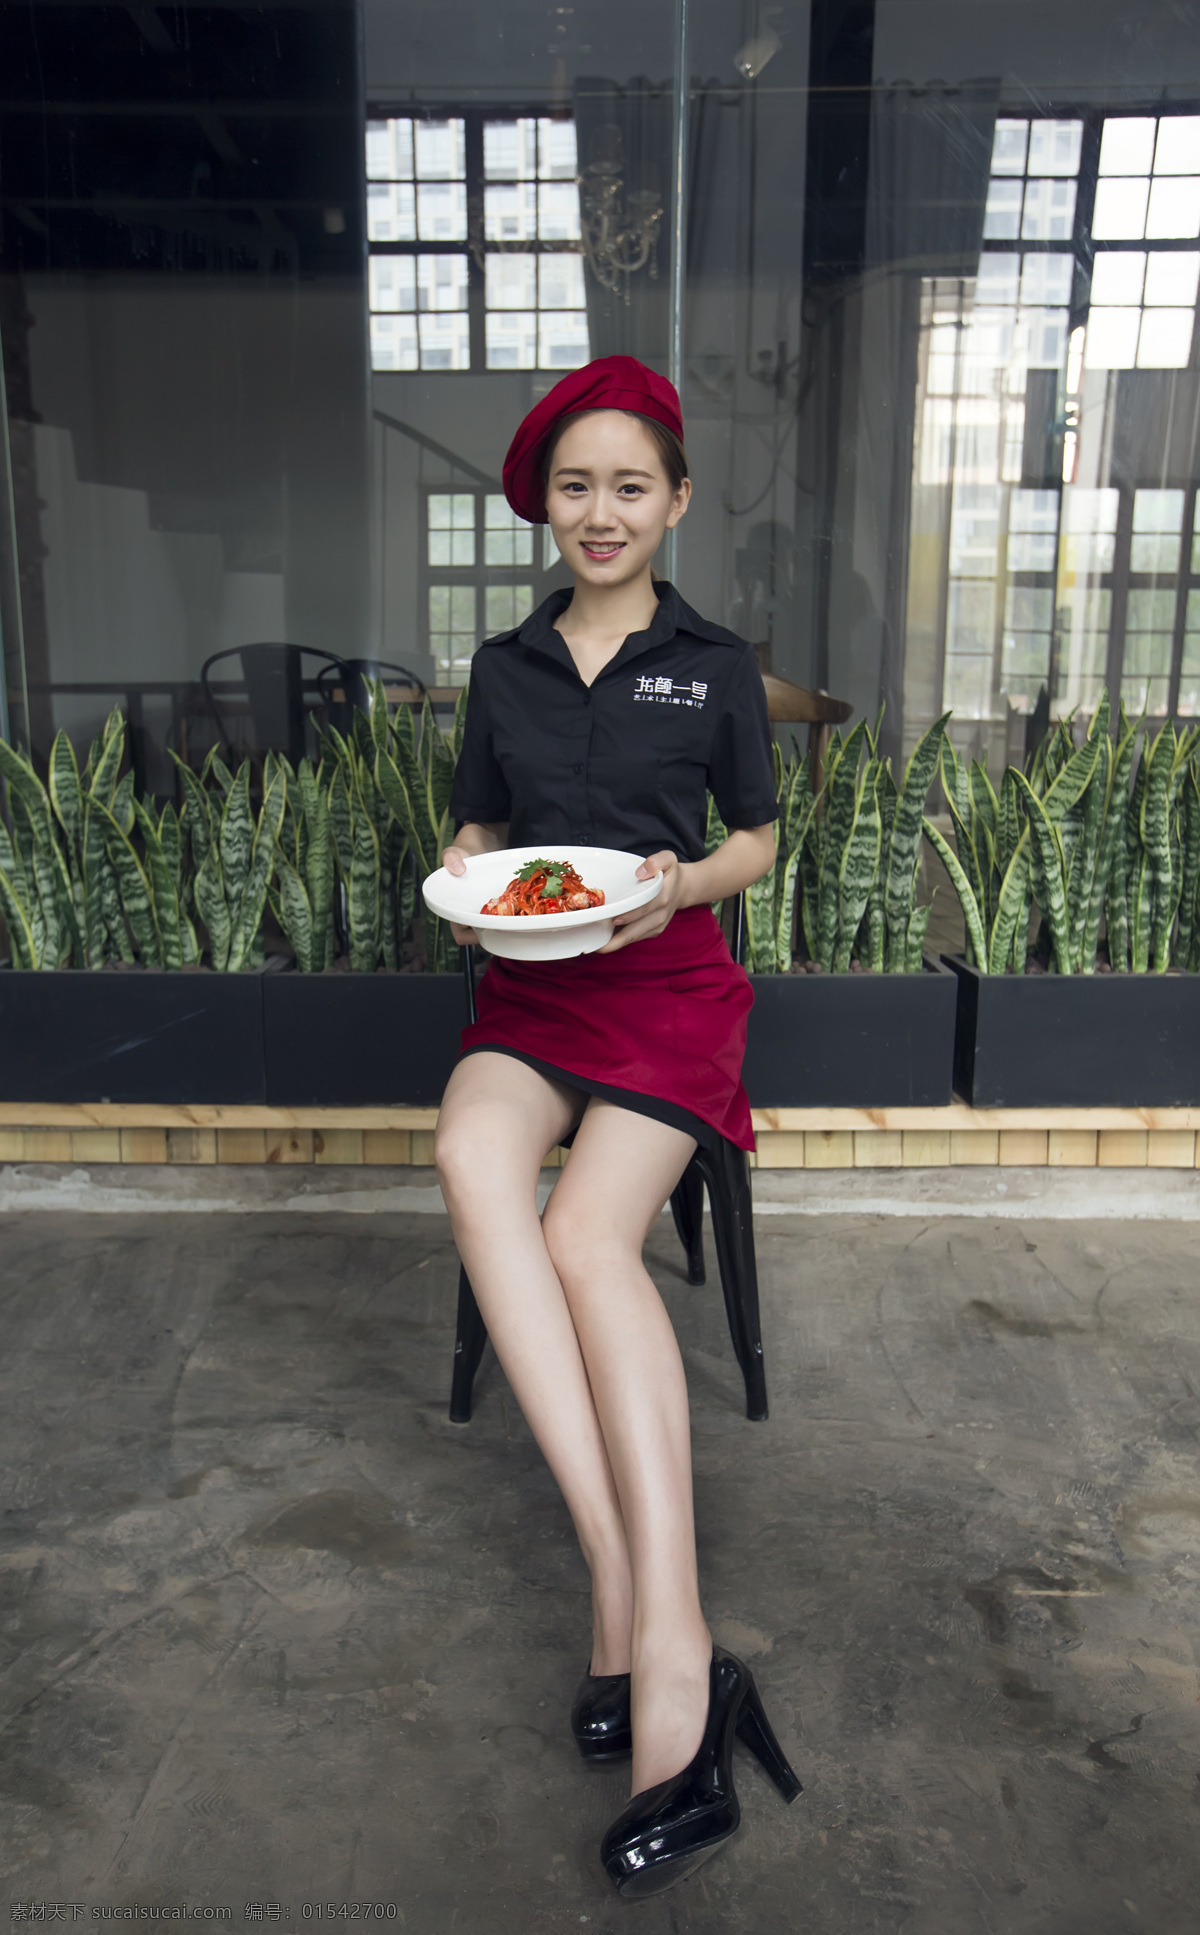 餐厅 美女 服务员 员工 龙虾 红裙 红帽 气质 长腿 人物图库 女性女人